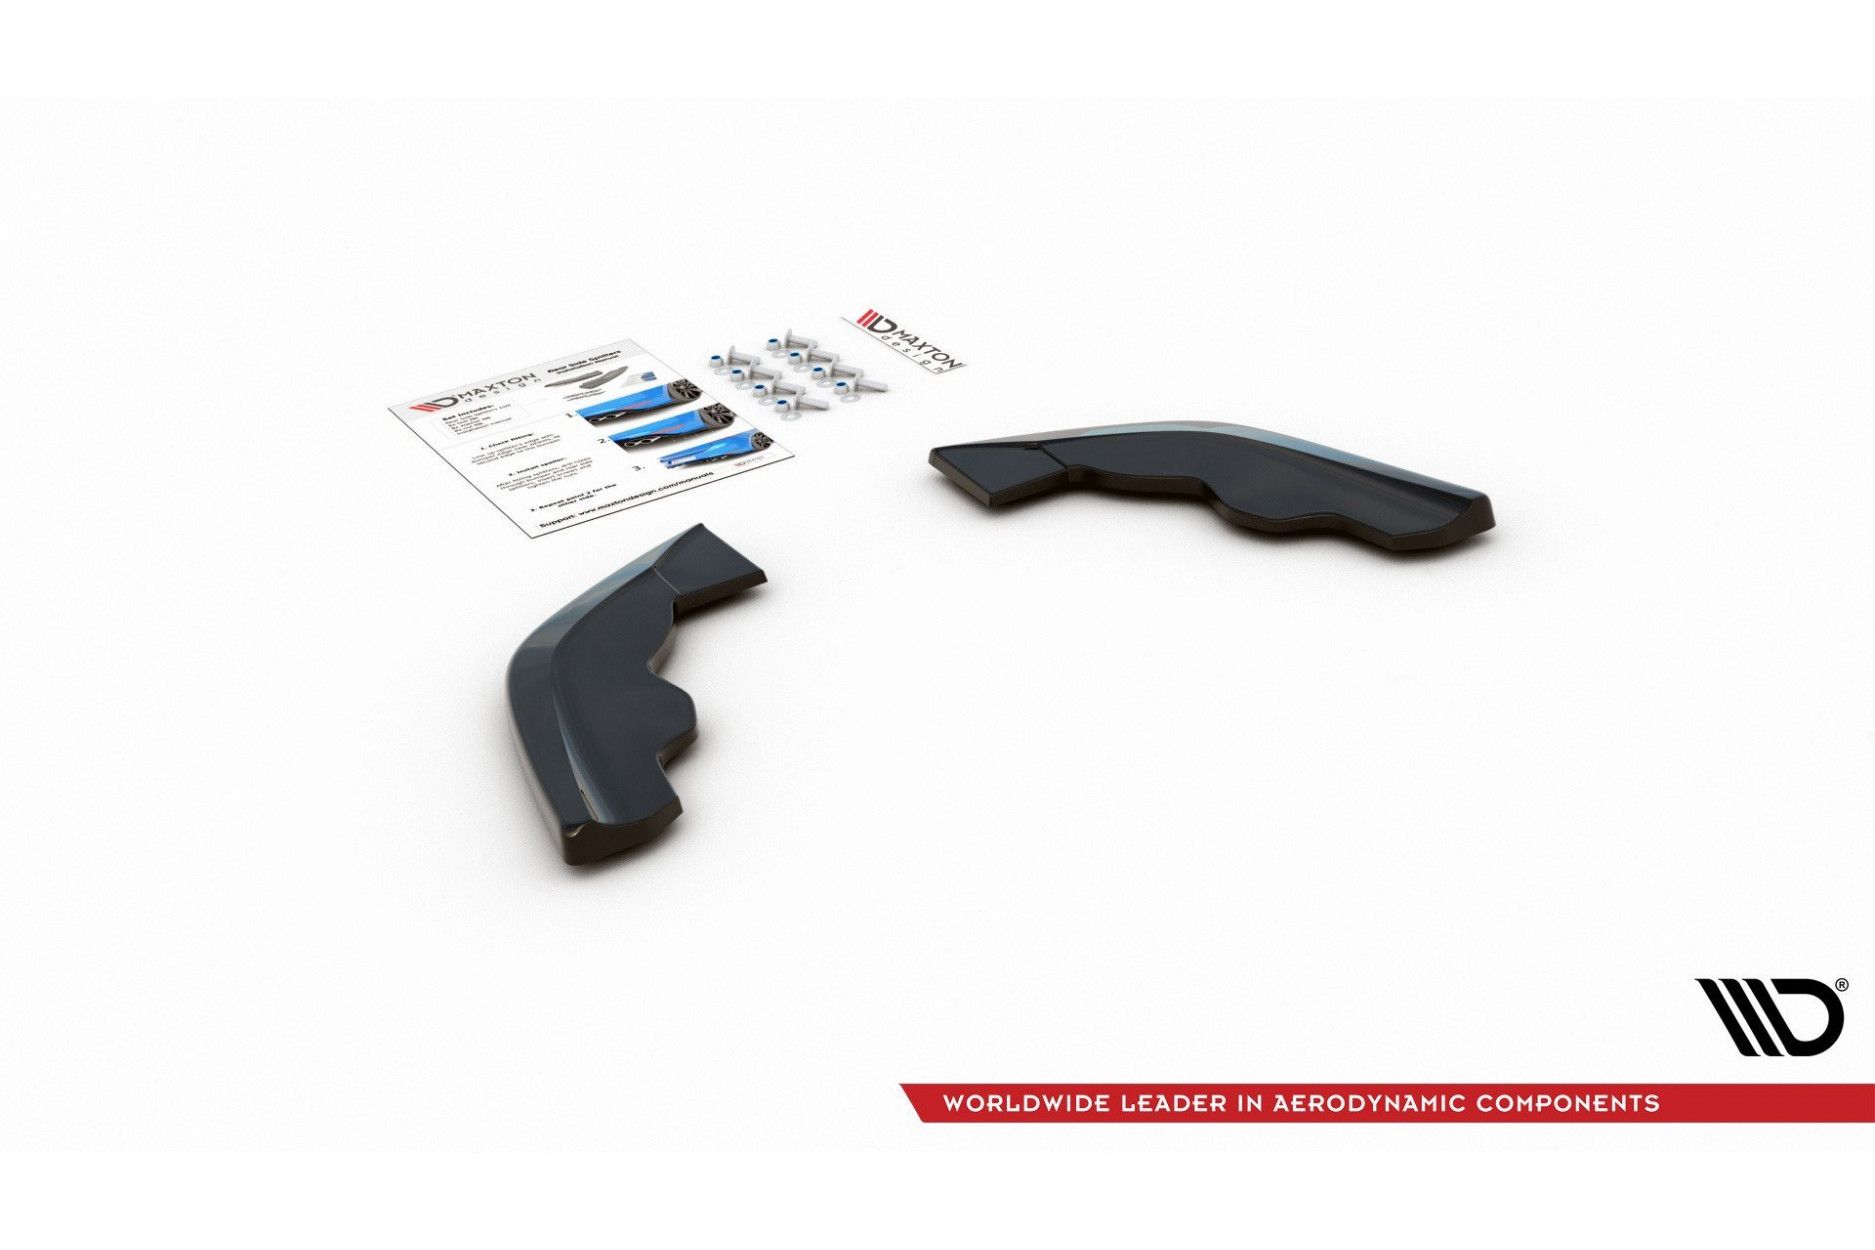 Carbon Seitenschweller Erweiterung für BMW 1 F40 M-Paket / M135i von Maxton  Design